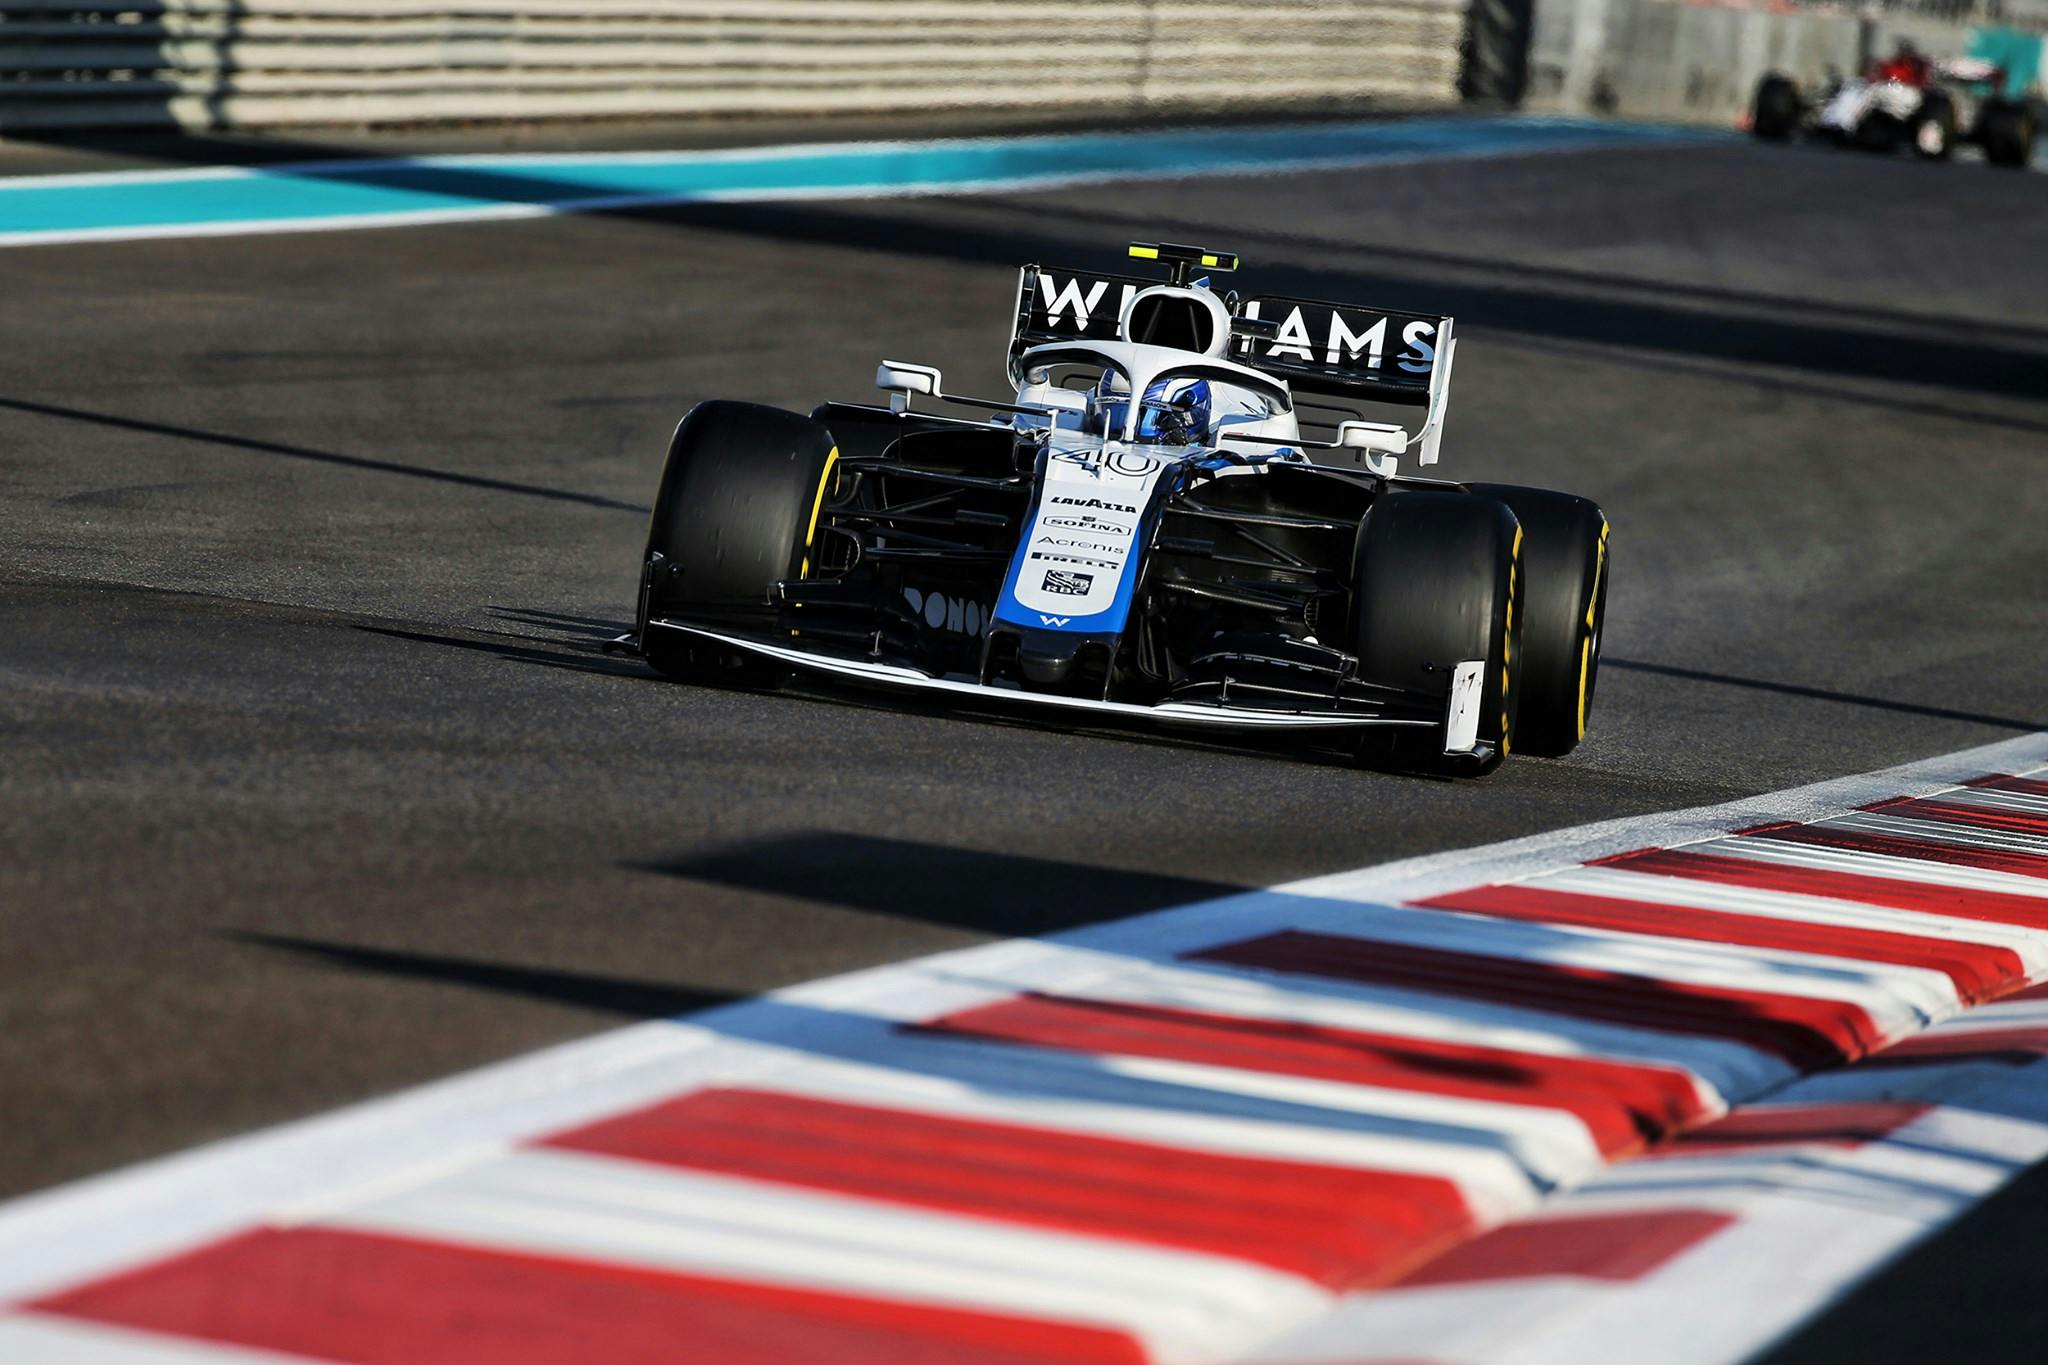 Williams wzmacnia współpracę z Mercedesem - nagły wzrost osiągów?